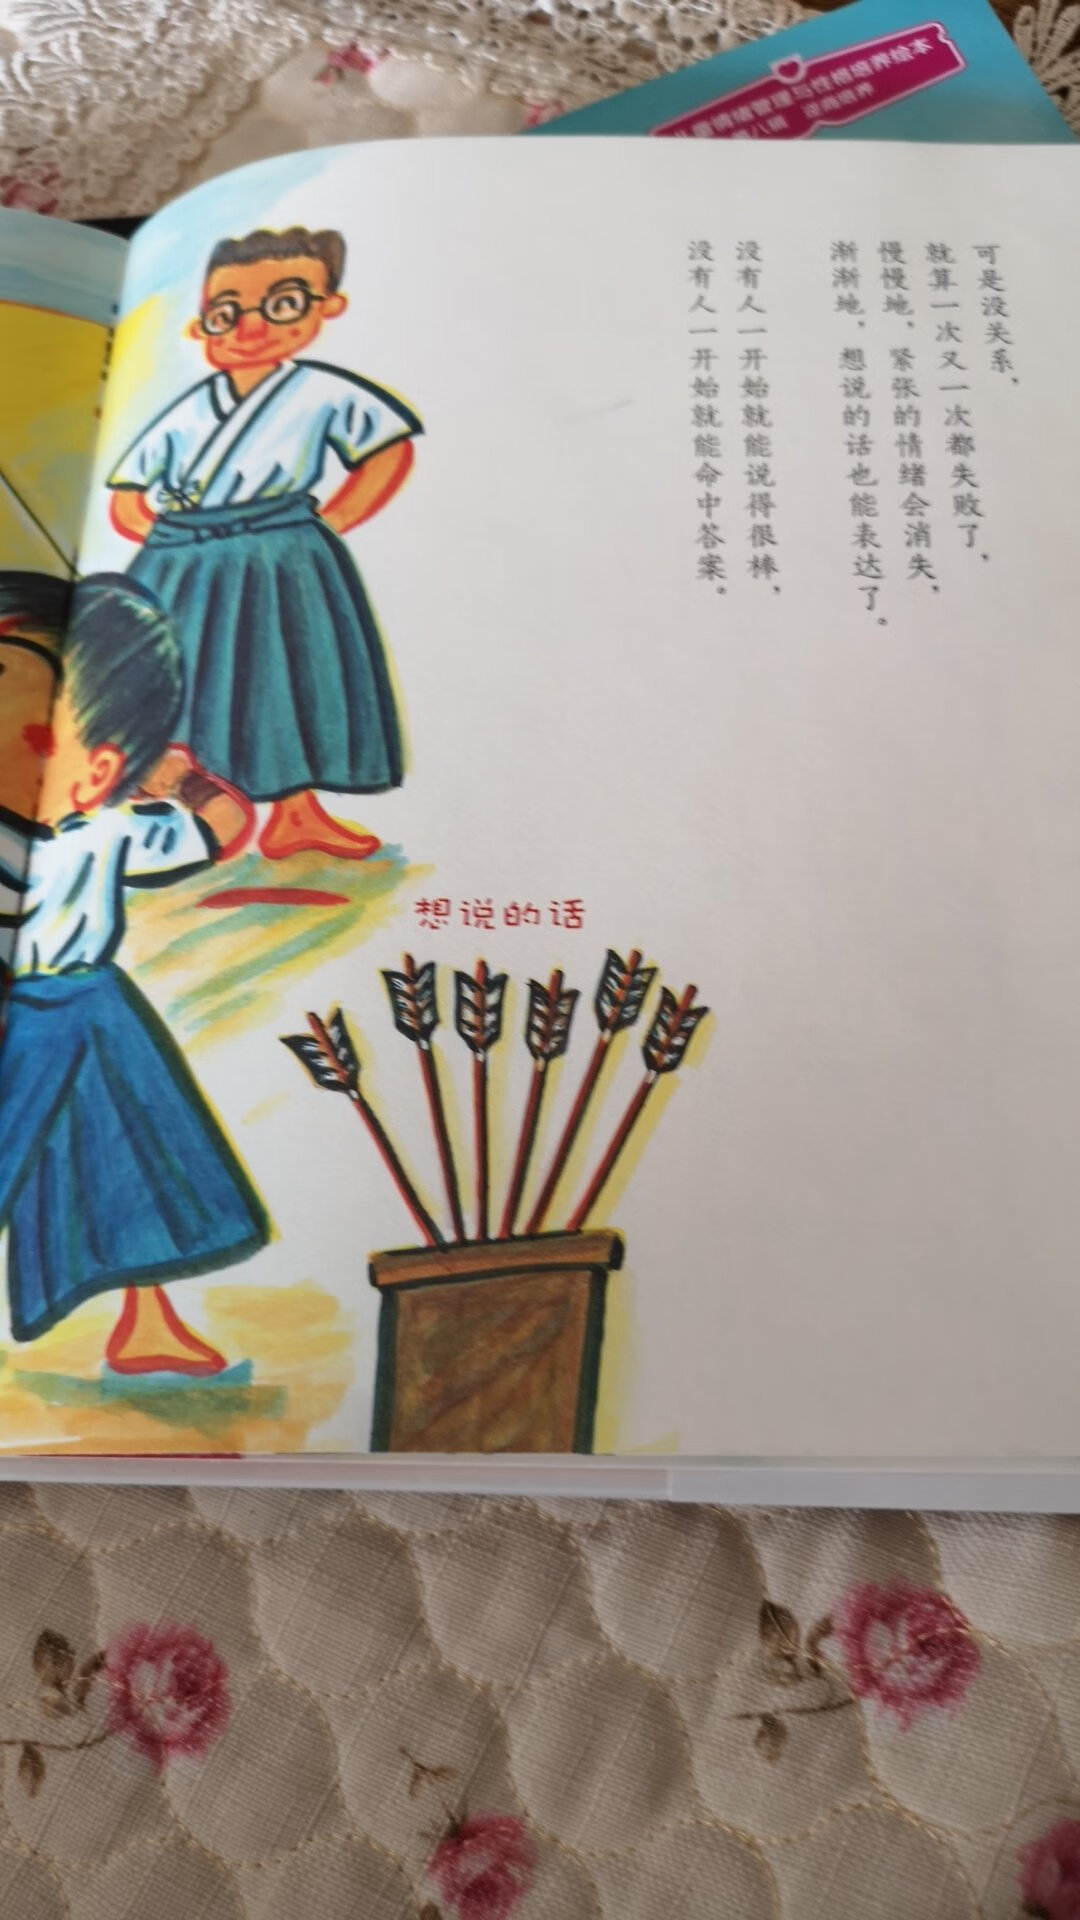 还可以，是彩页装的，书很薄，日本的幼儿读物，还没给孩子讲，希望有用。另外，感觉油墨味有点大，先晒一晒，去去味。